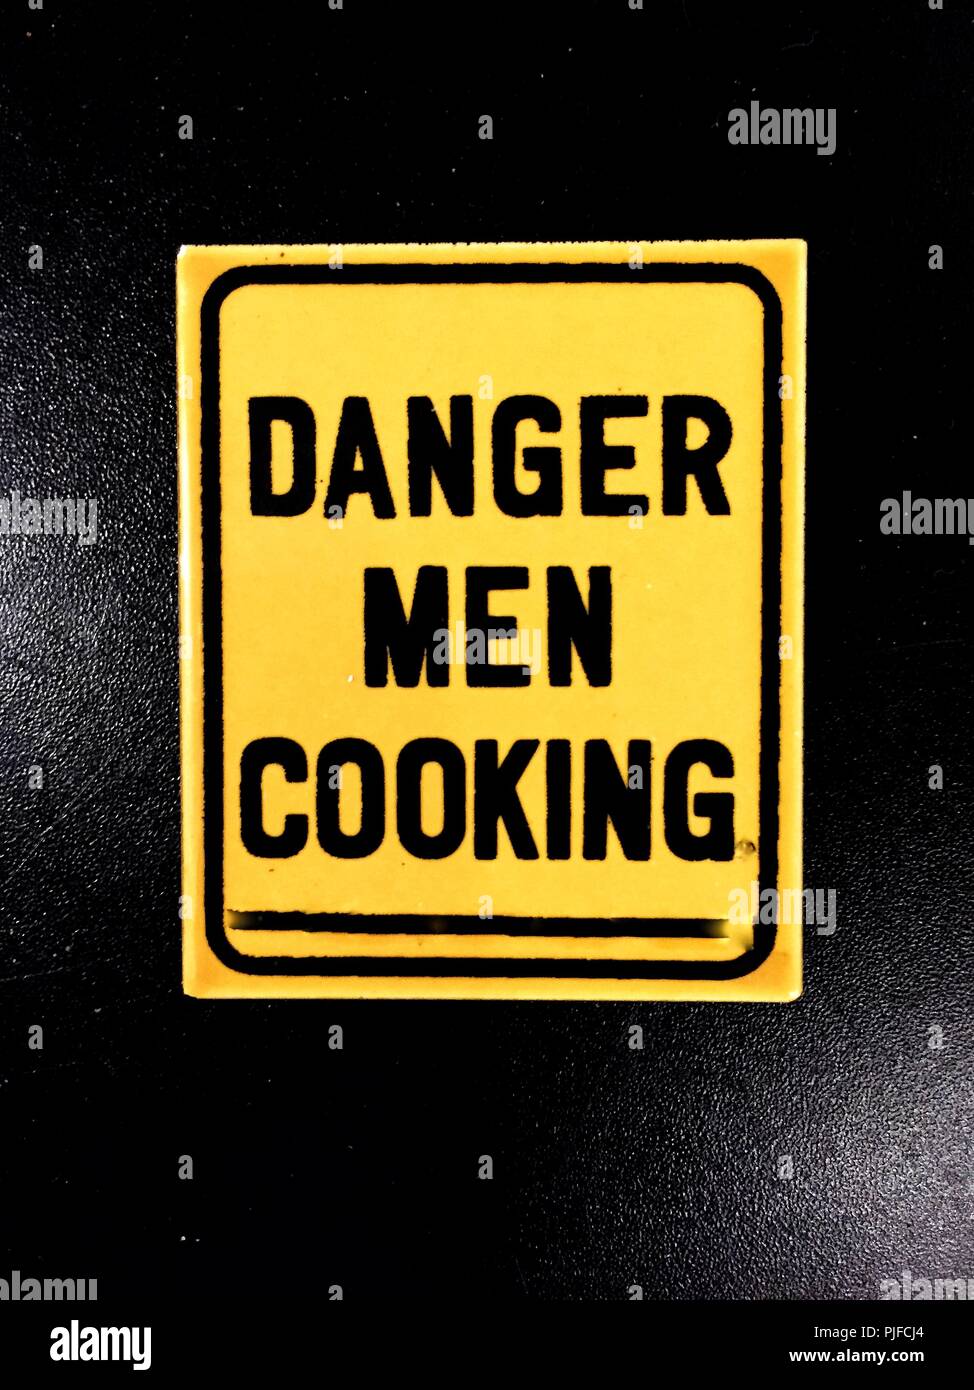 Una divertida nevera imán con las palabras peligro hombres cocinar impreso en Foto de stock